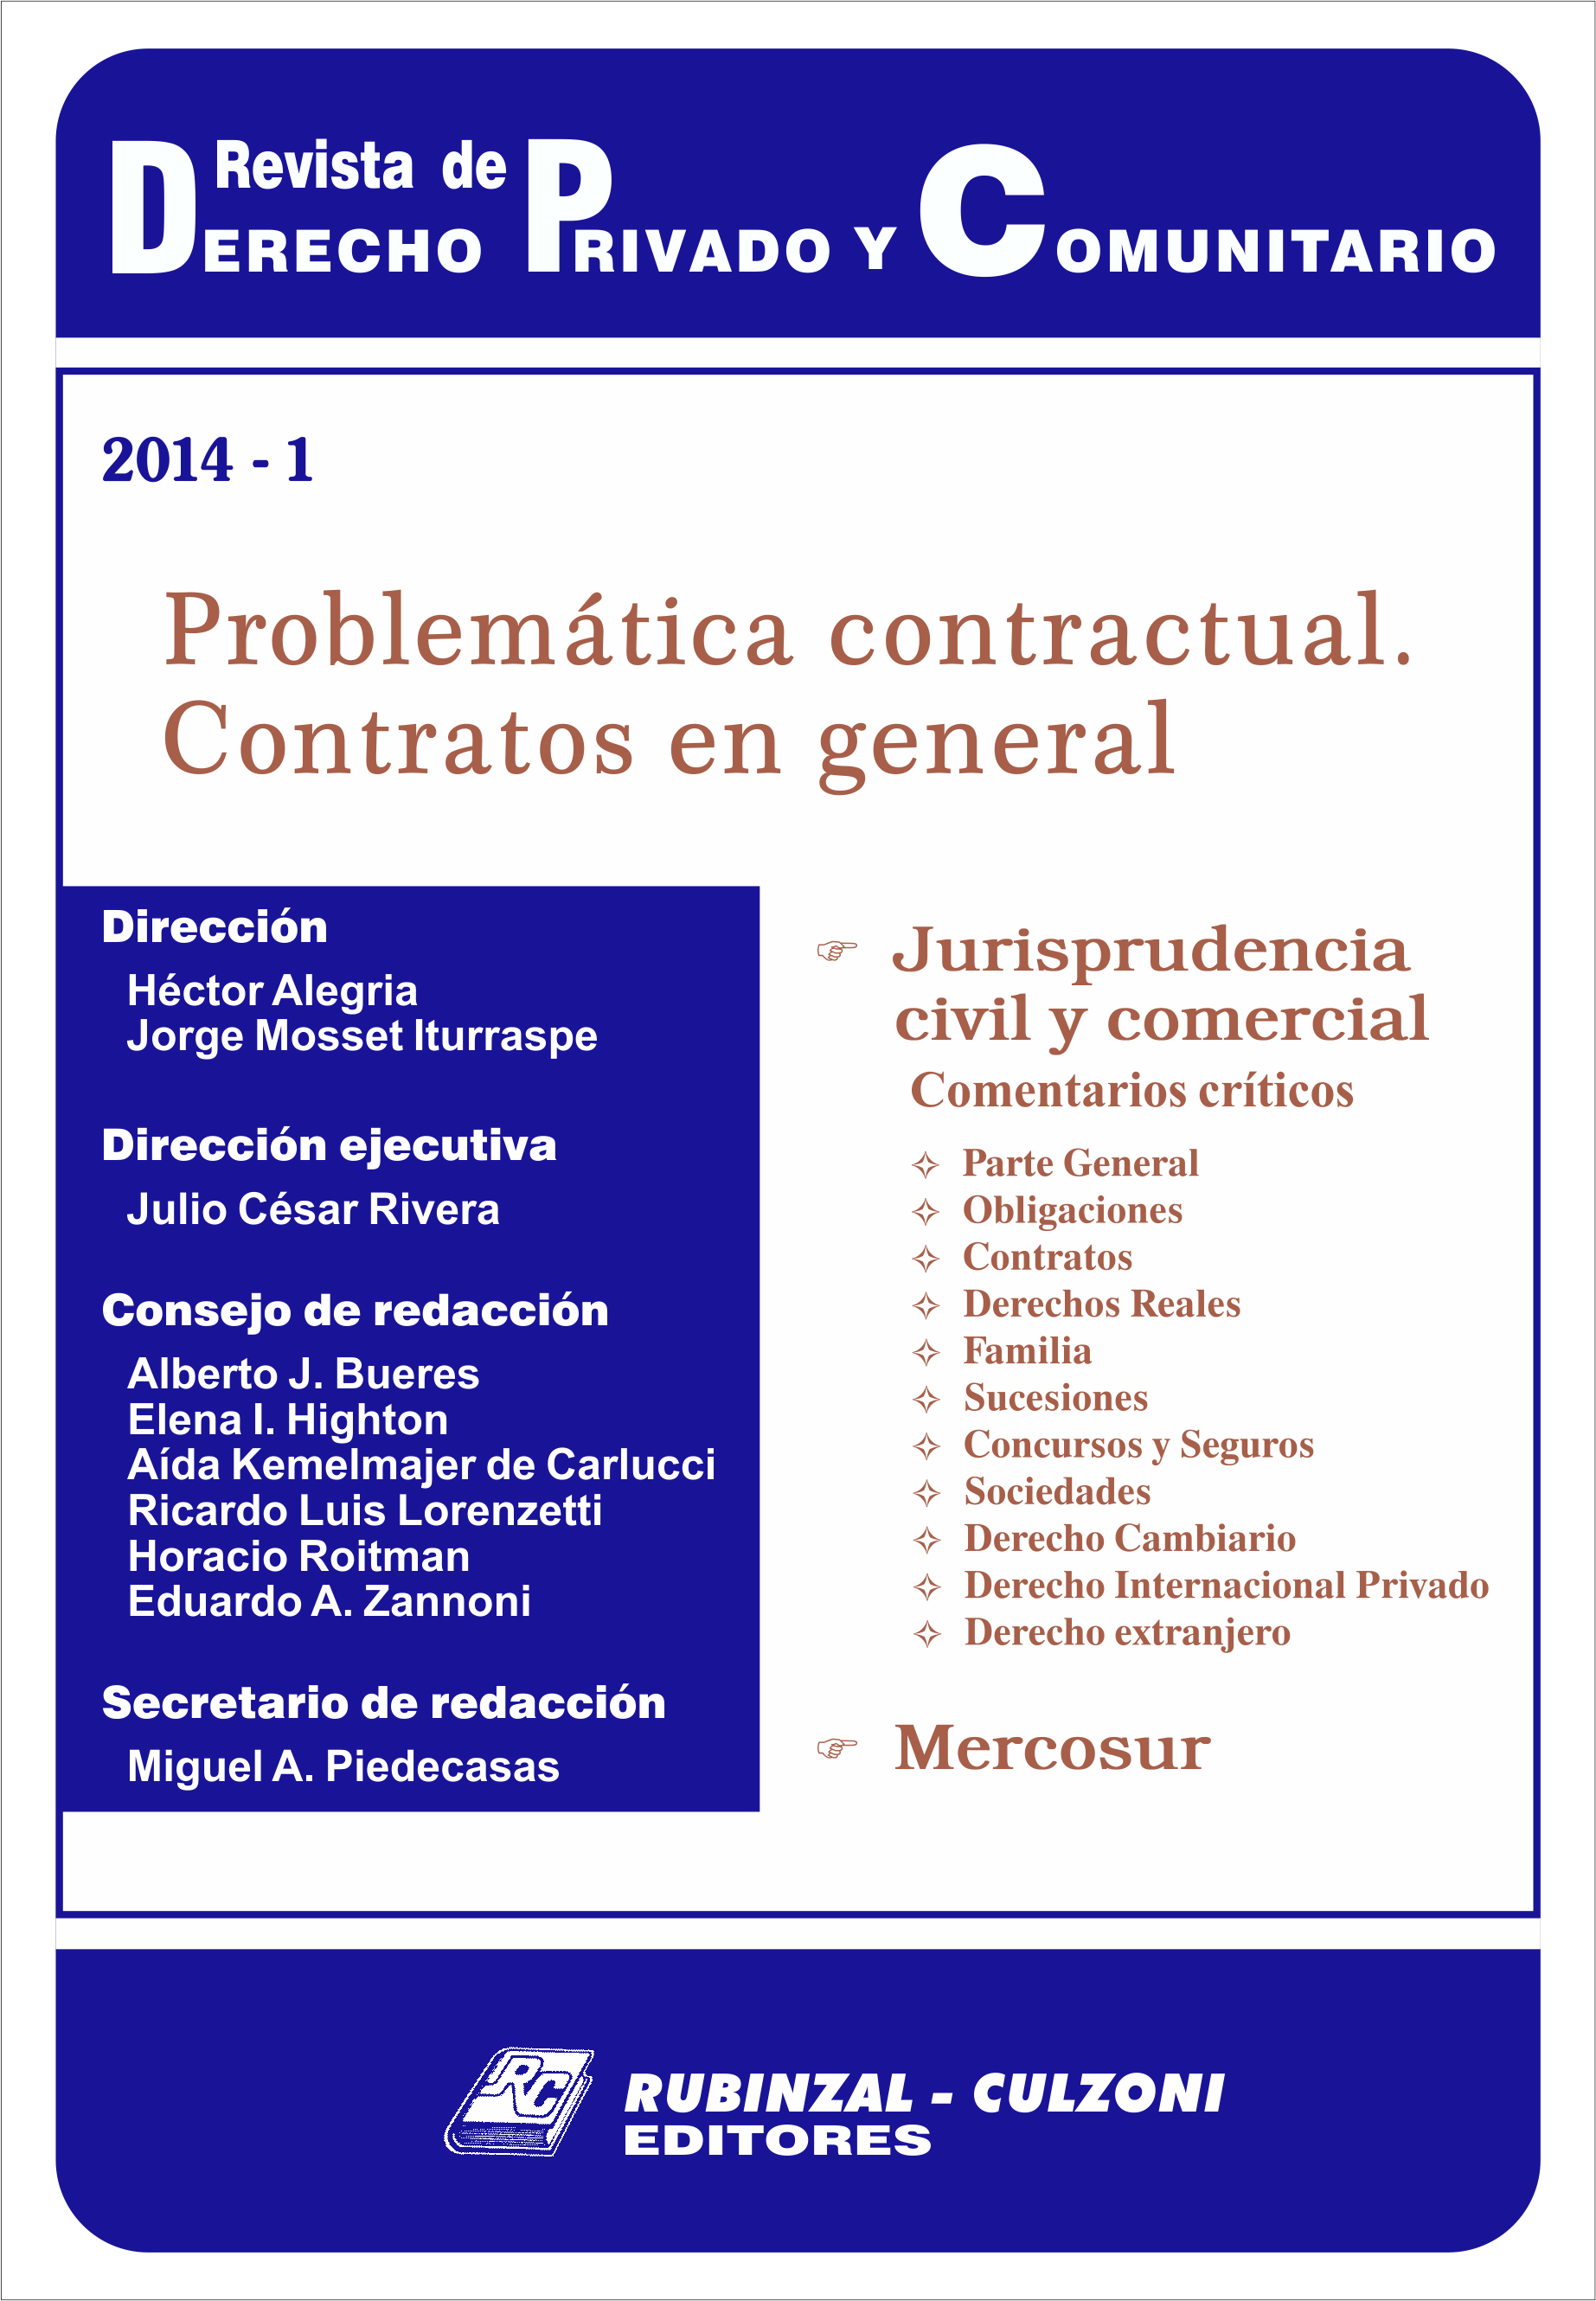 Revista de Derecho Privado y Comunitario - Problemática contractual. Contratos en general.